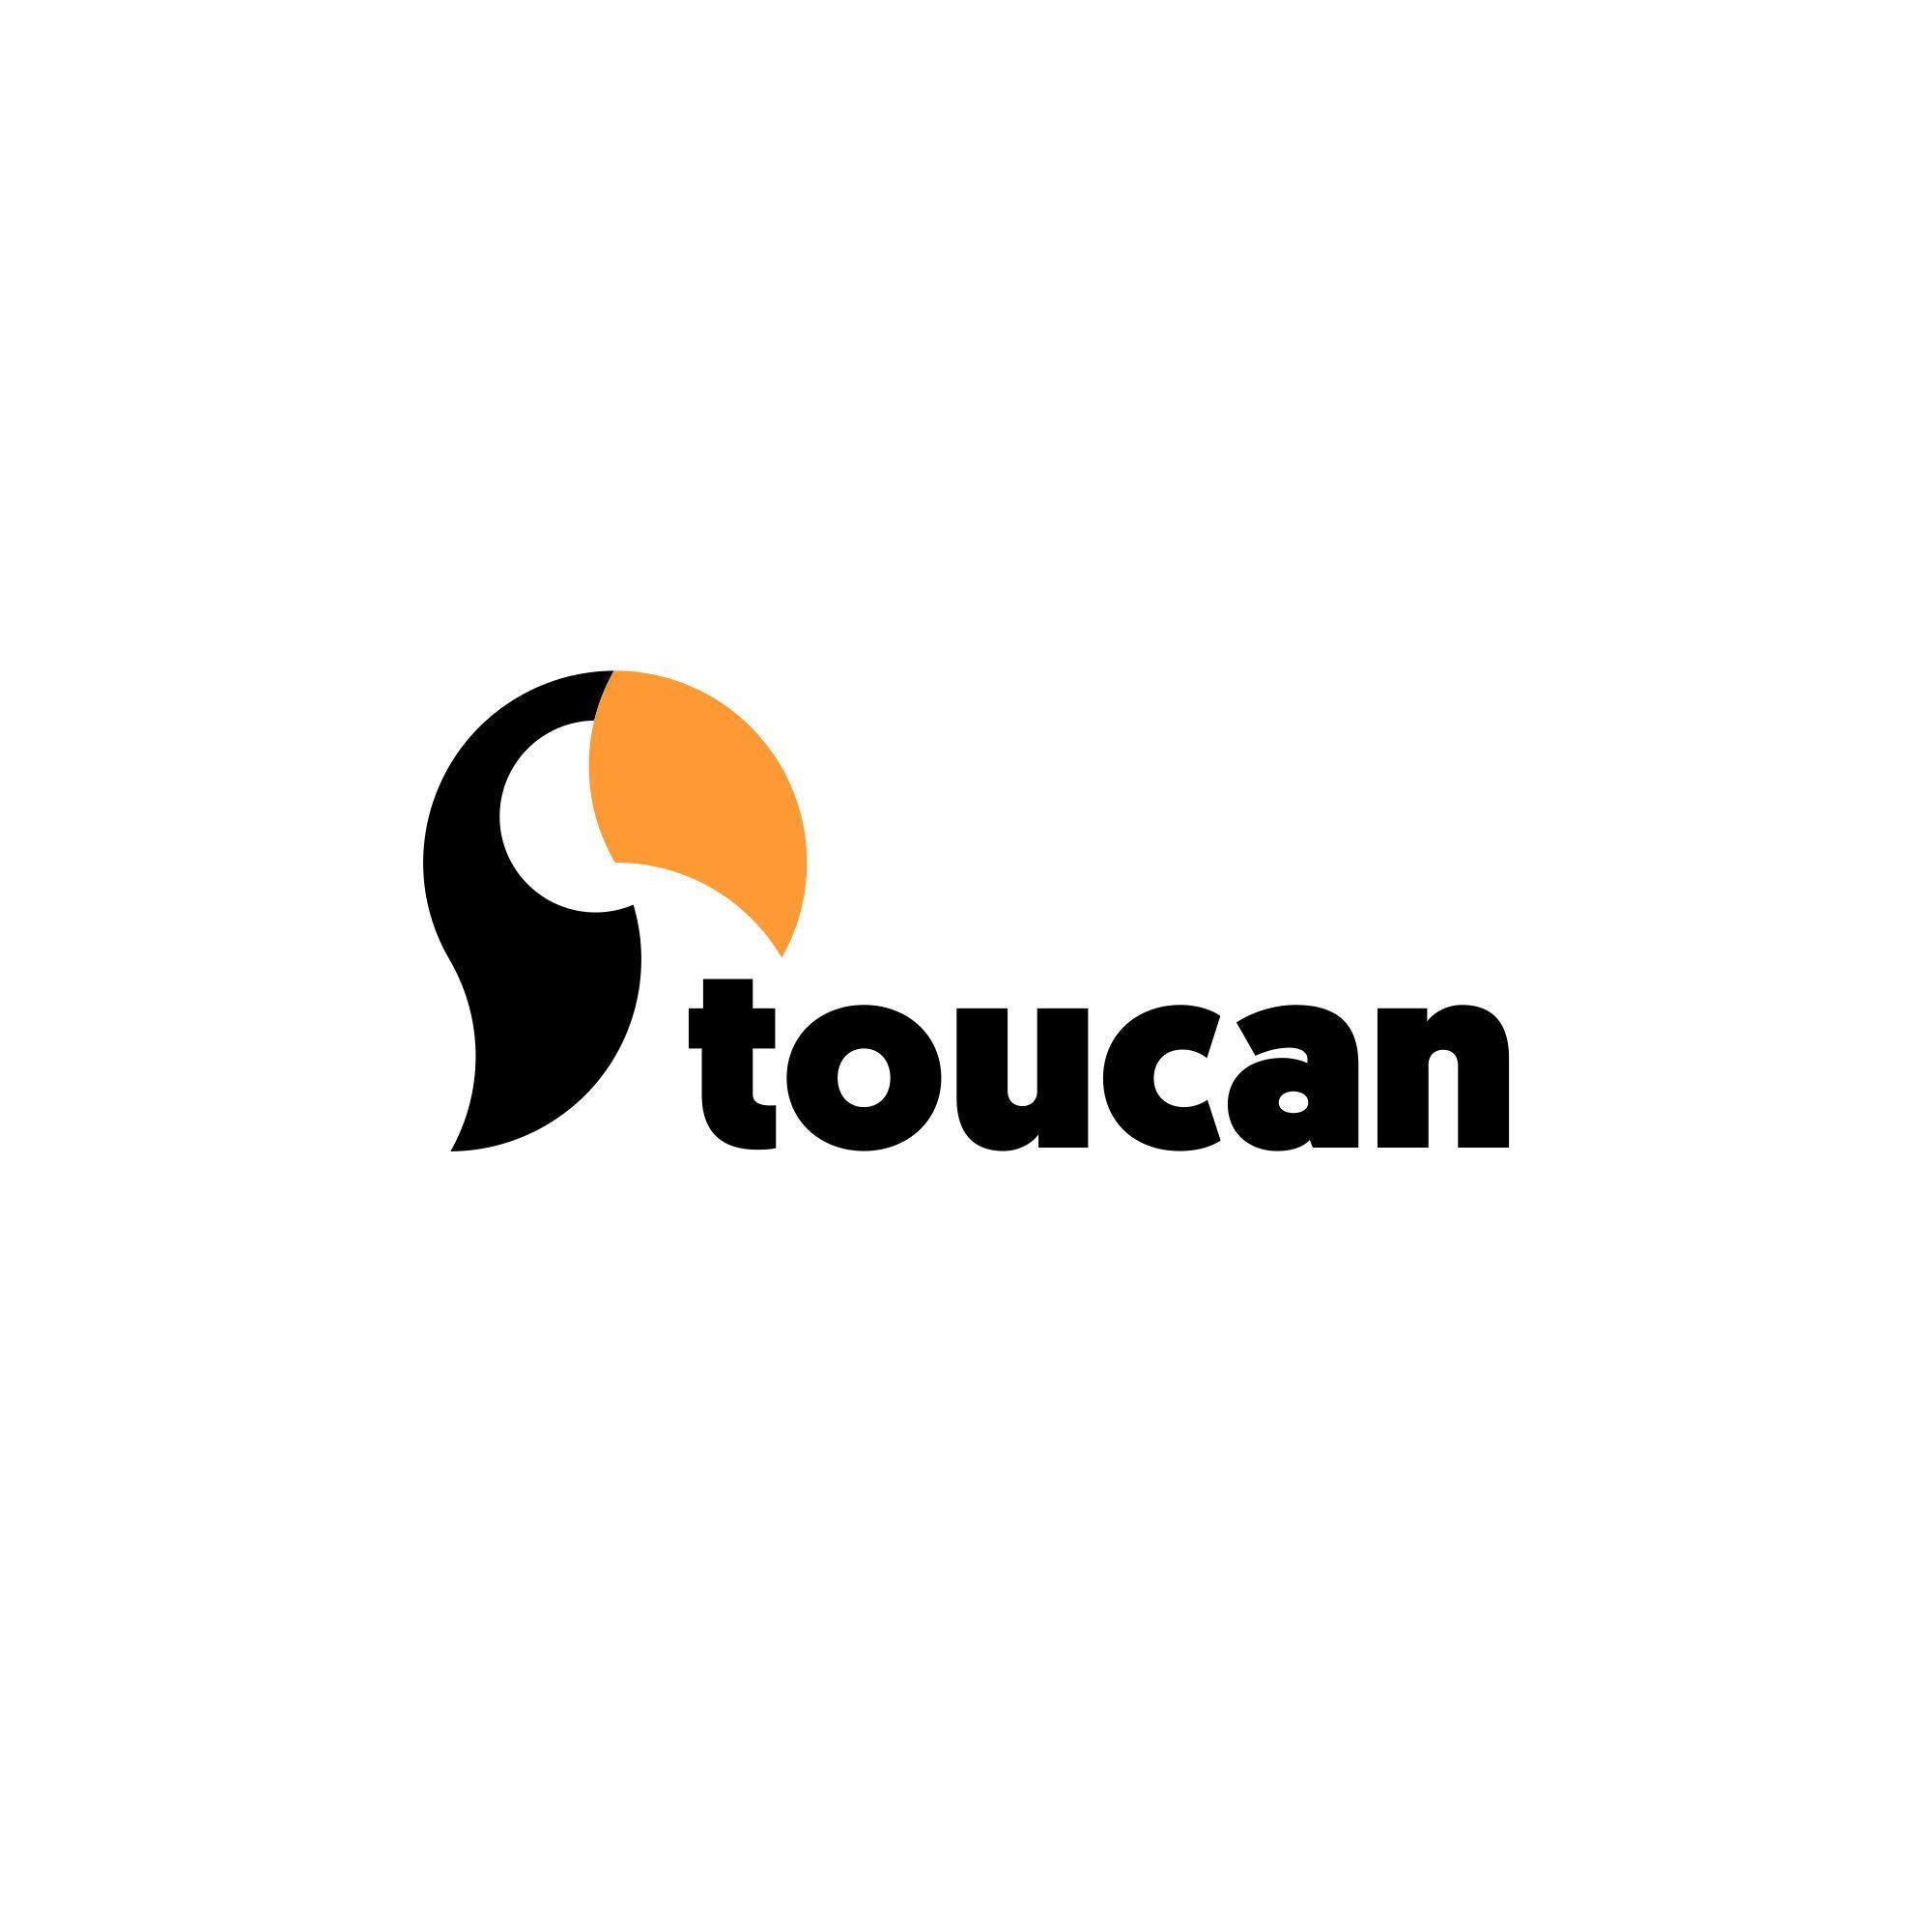 Tucan Logo - Toucan logo - designed for an online printing service. Logo design ...